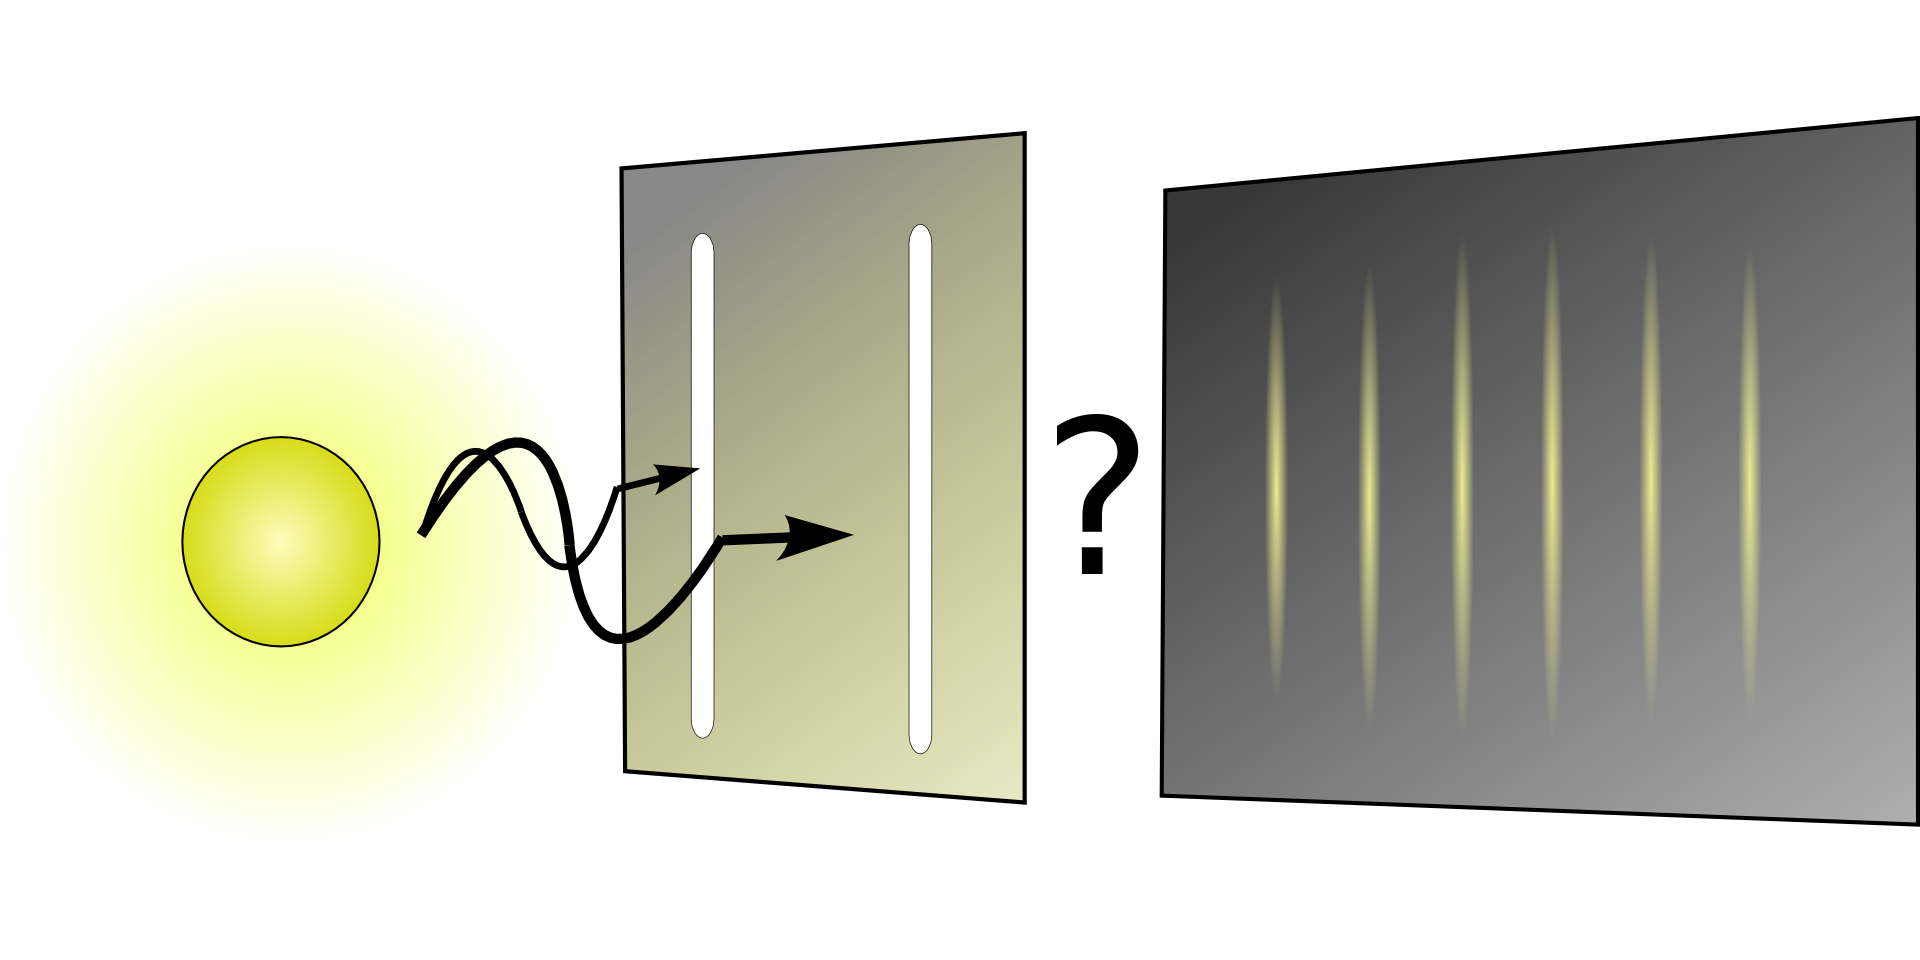 量子コンピューターの原理である量子力学のスリット図